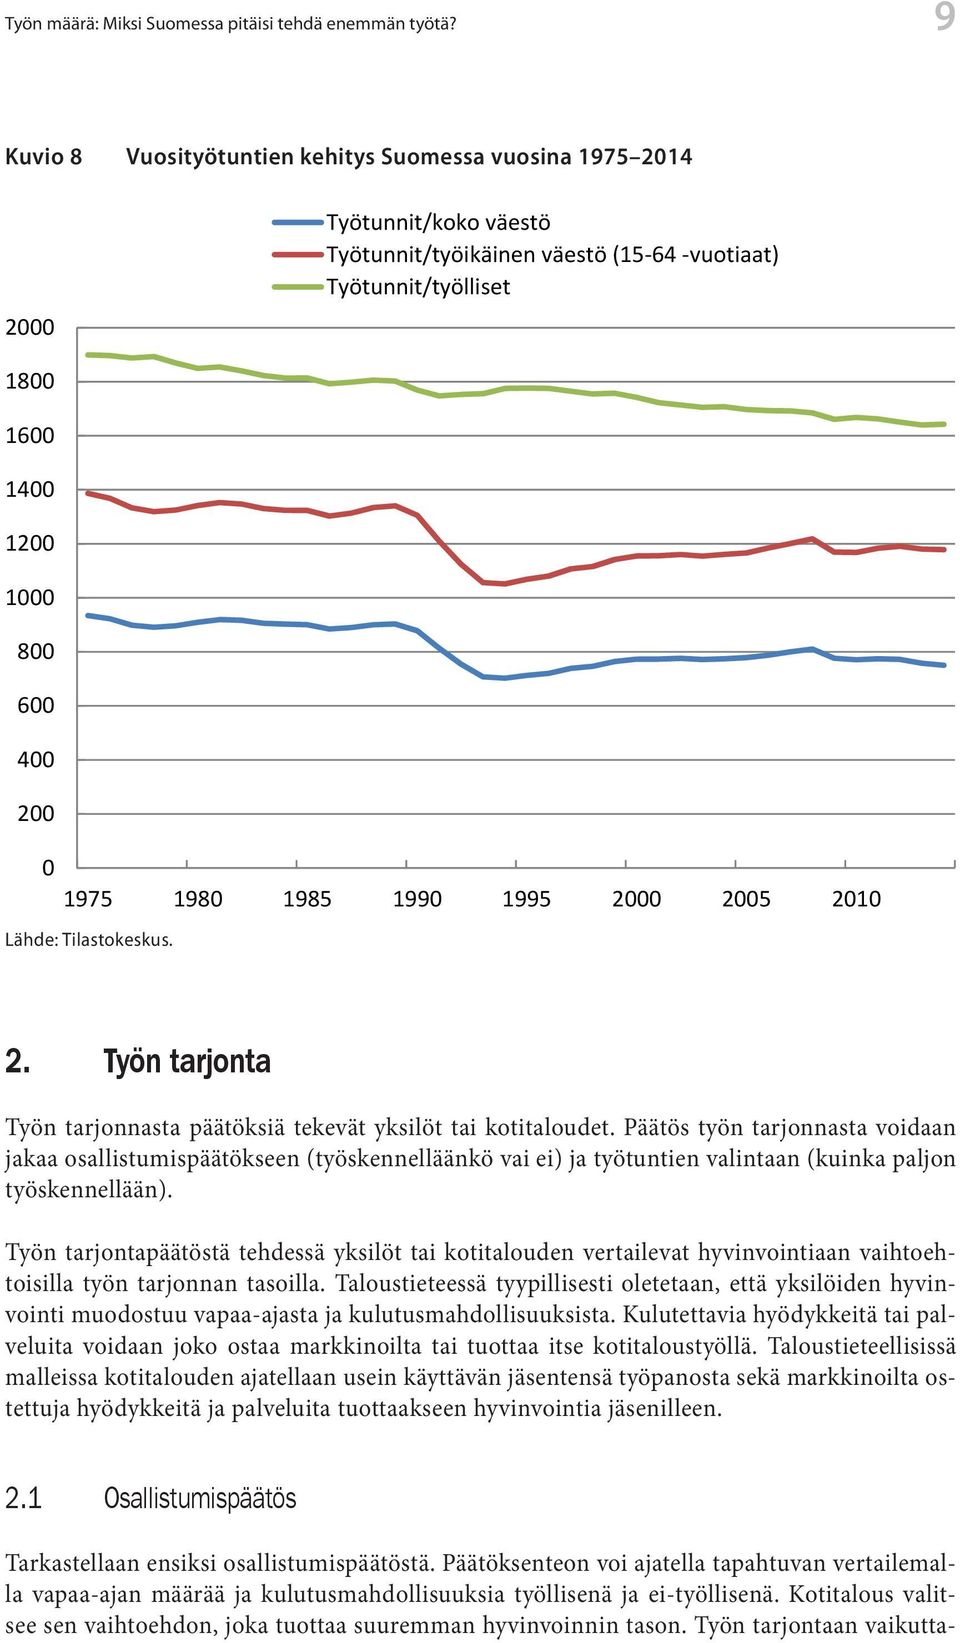 Työtuntien määrä työikäistä väestöä kohti on puolestaan laskenut noin 200 tunnilla vuodessa. Viidesosa Työn määrä: Miksi Suomessa pitäisi tehdä enemmän työtä?